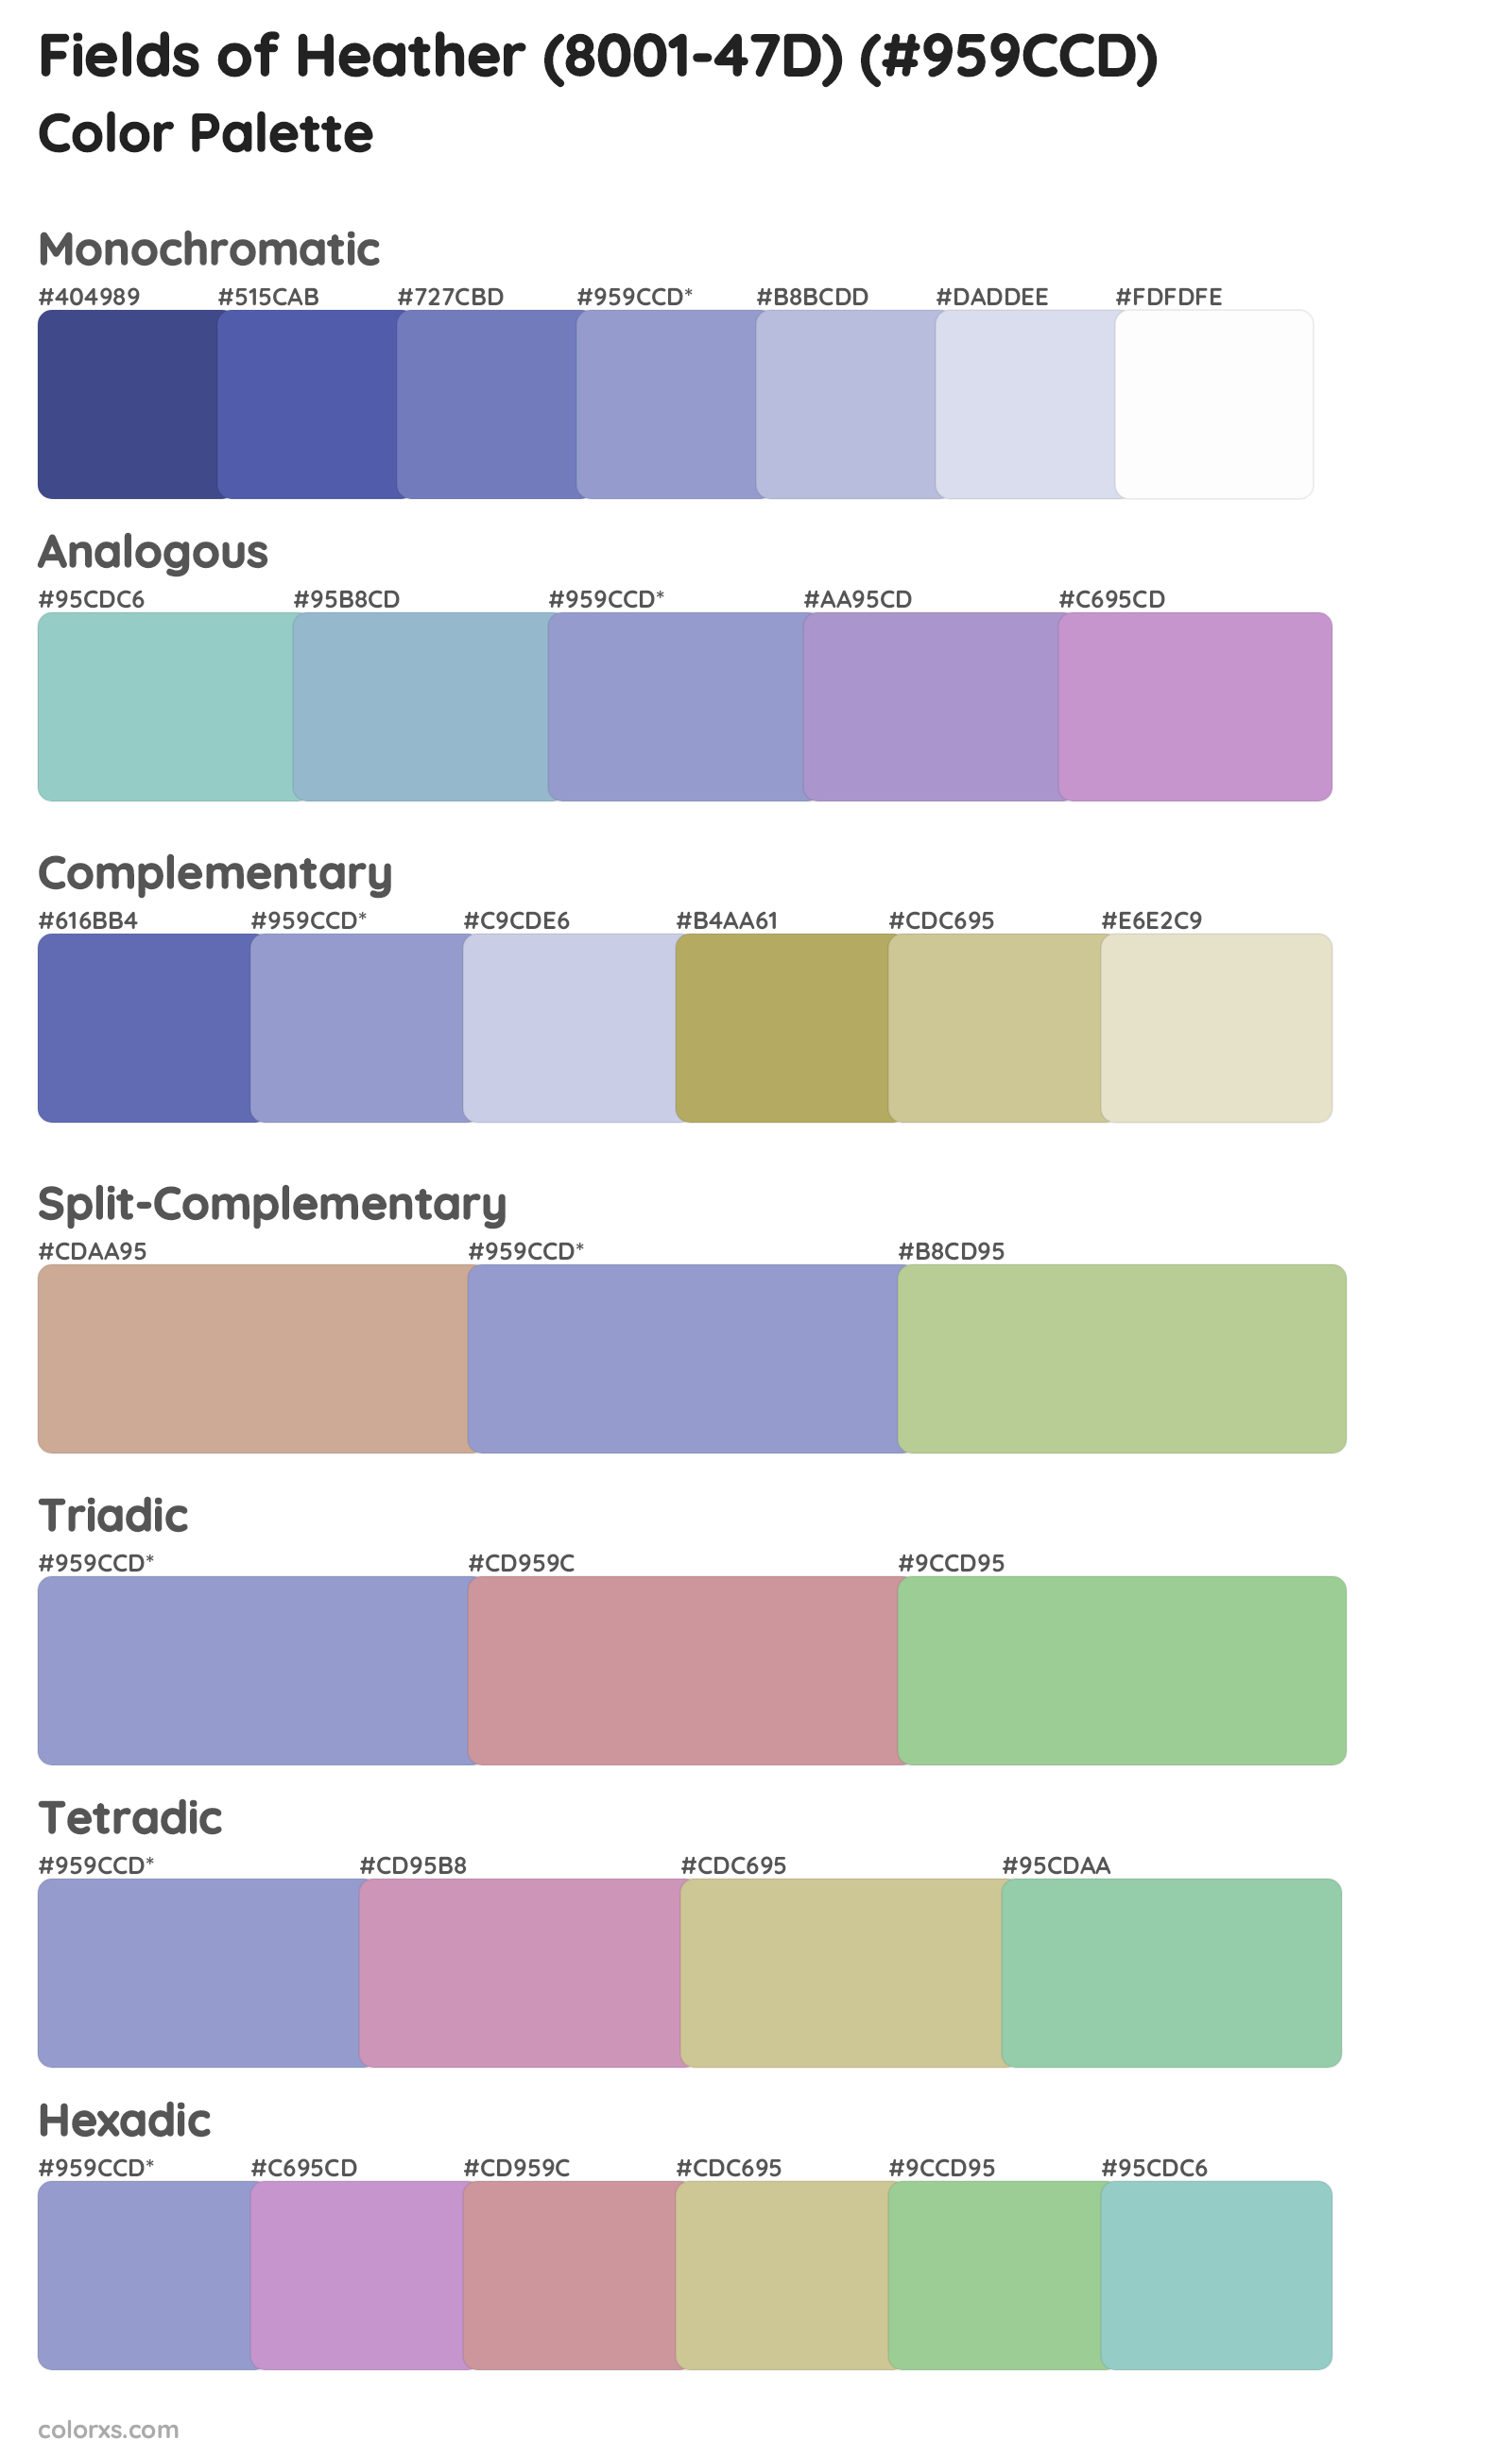 Fields of Heather (8001-47D) Color Scheme Palettes